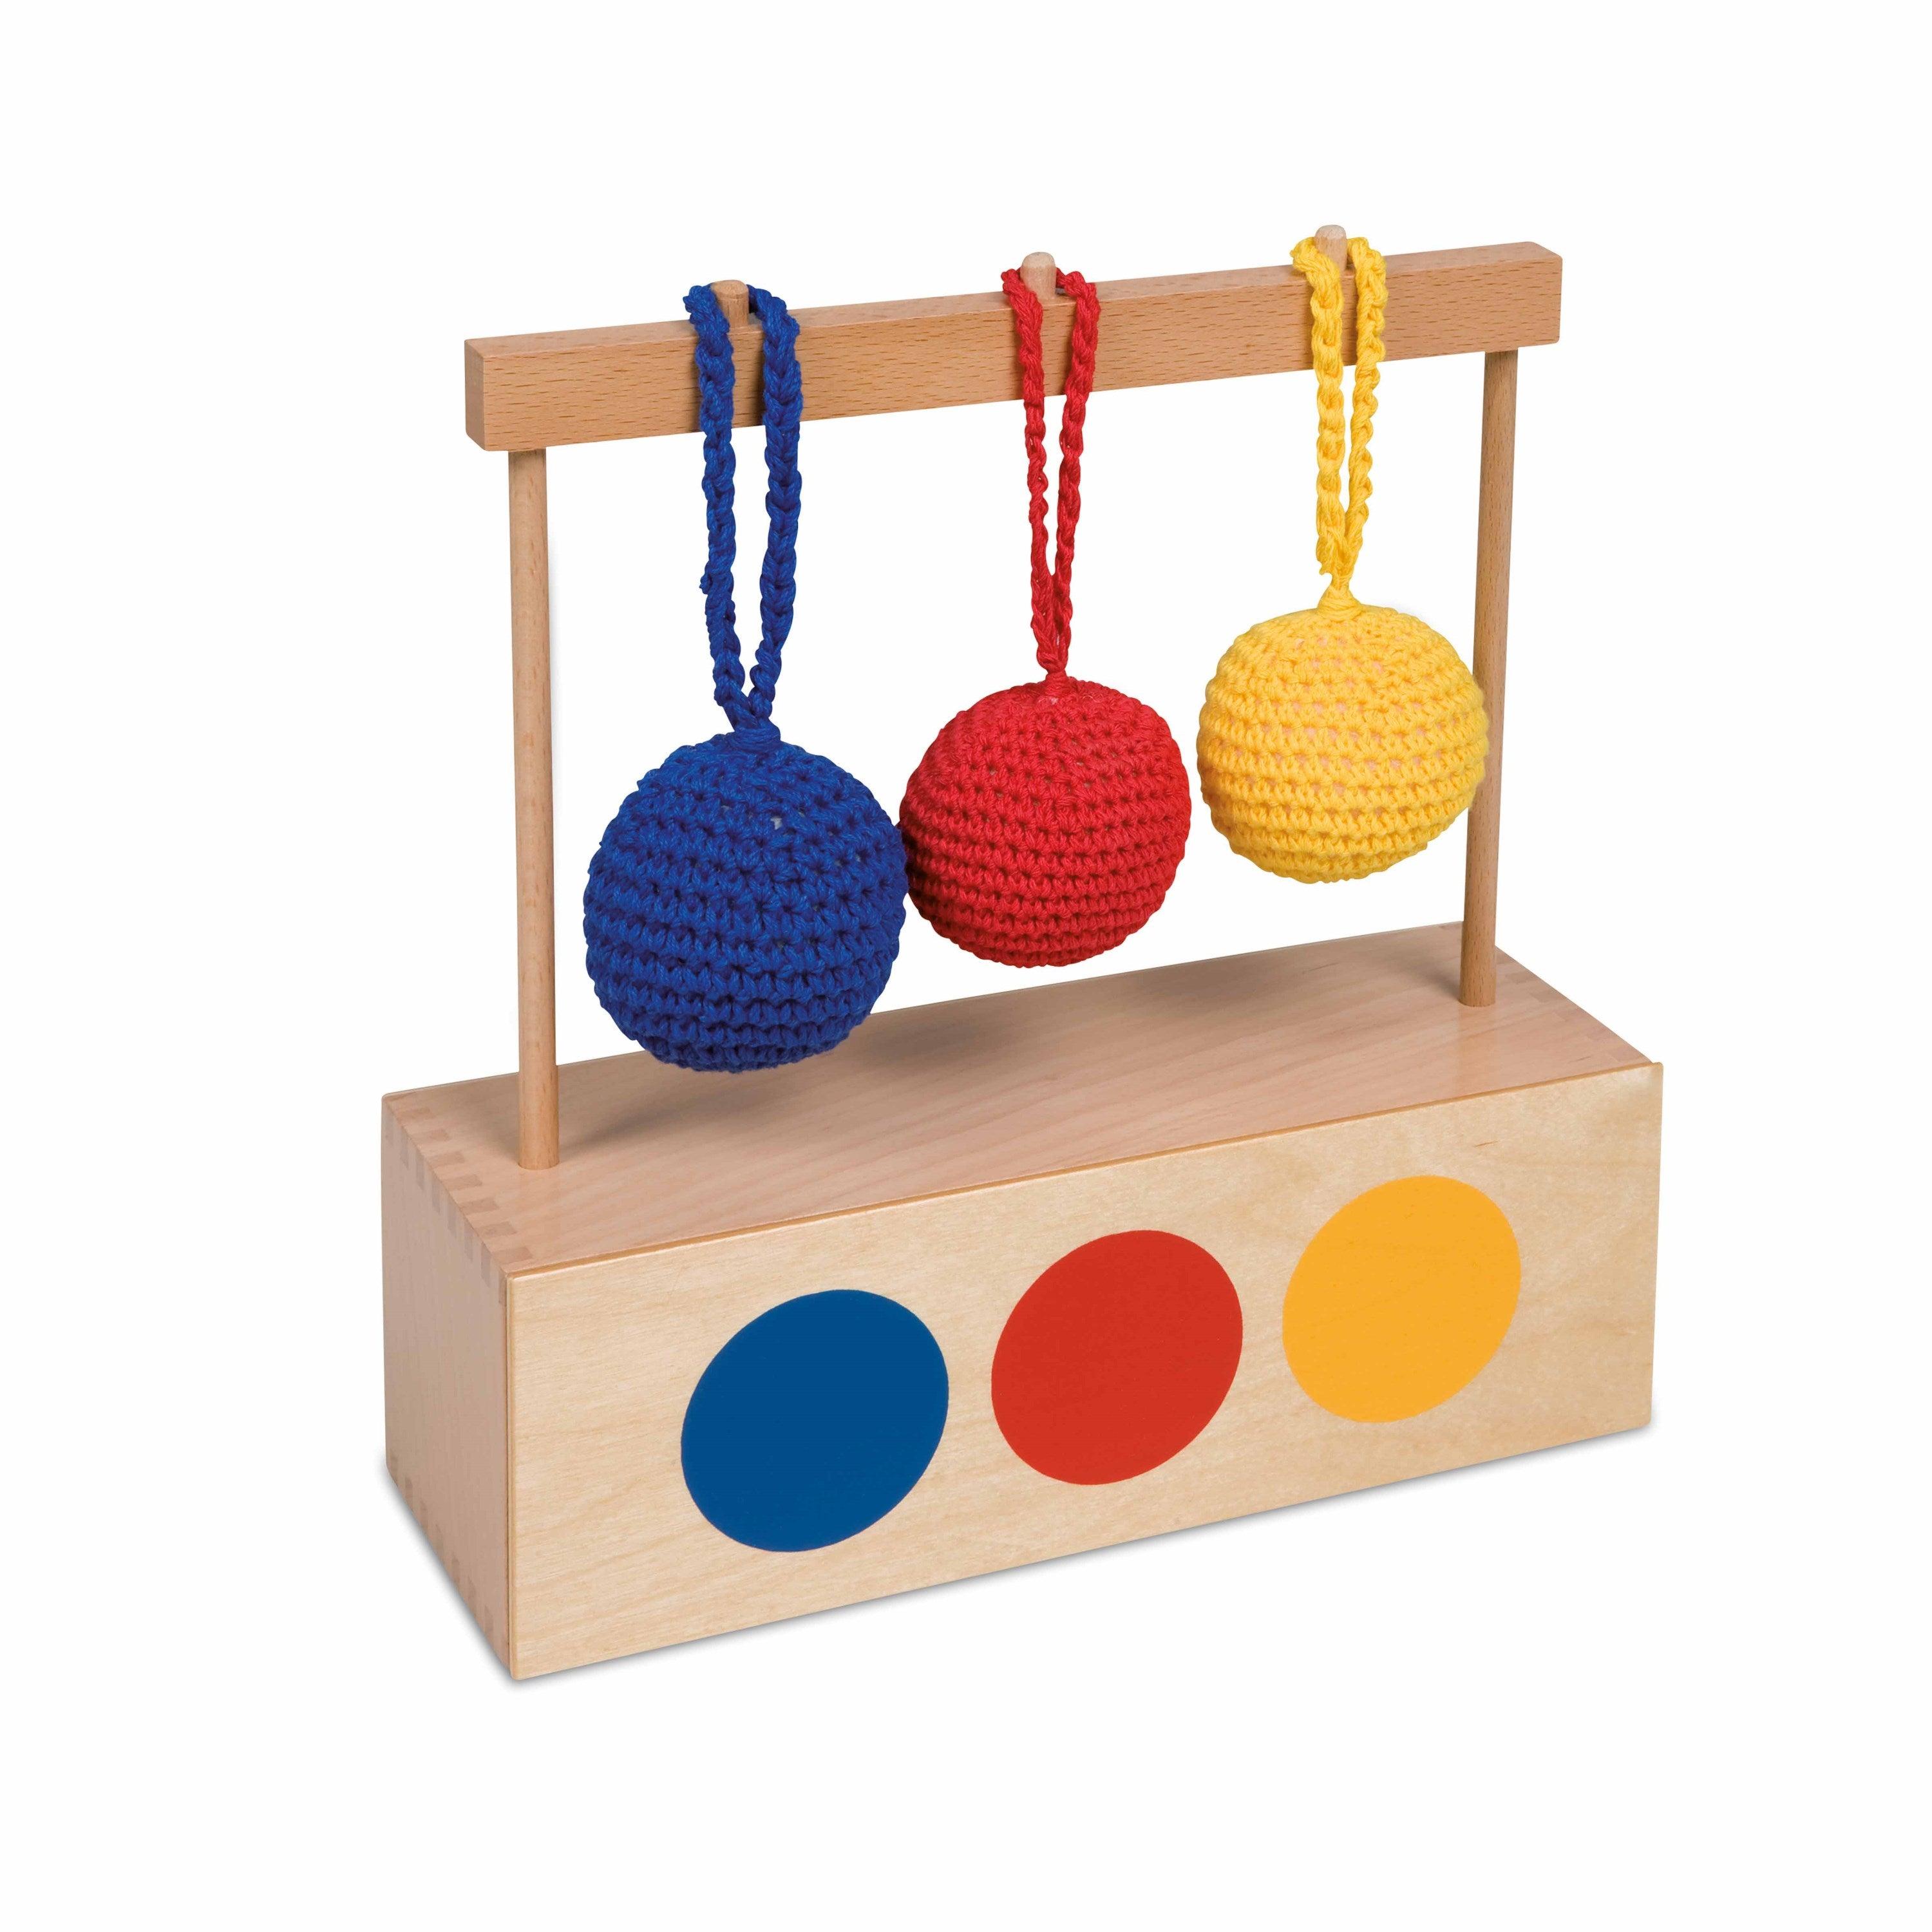 Nienhuis Montessori: Imbucare Box com 3 bolas de malha coloridas